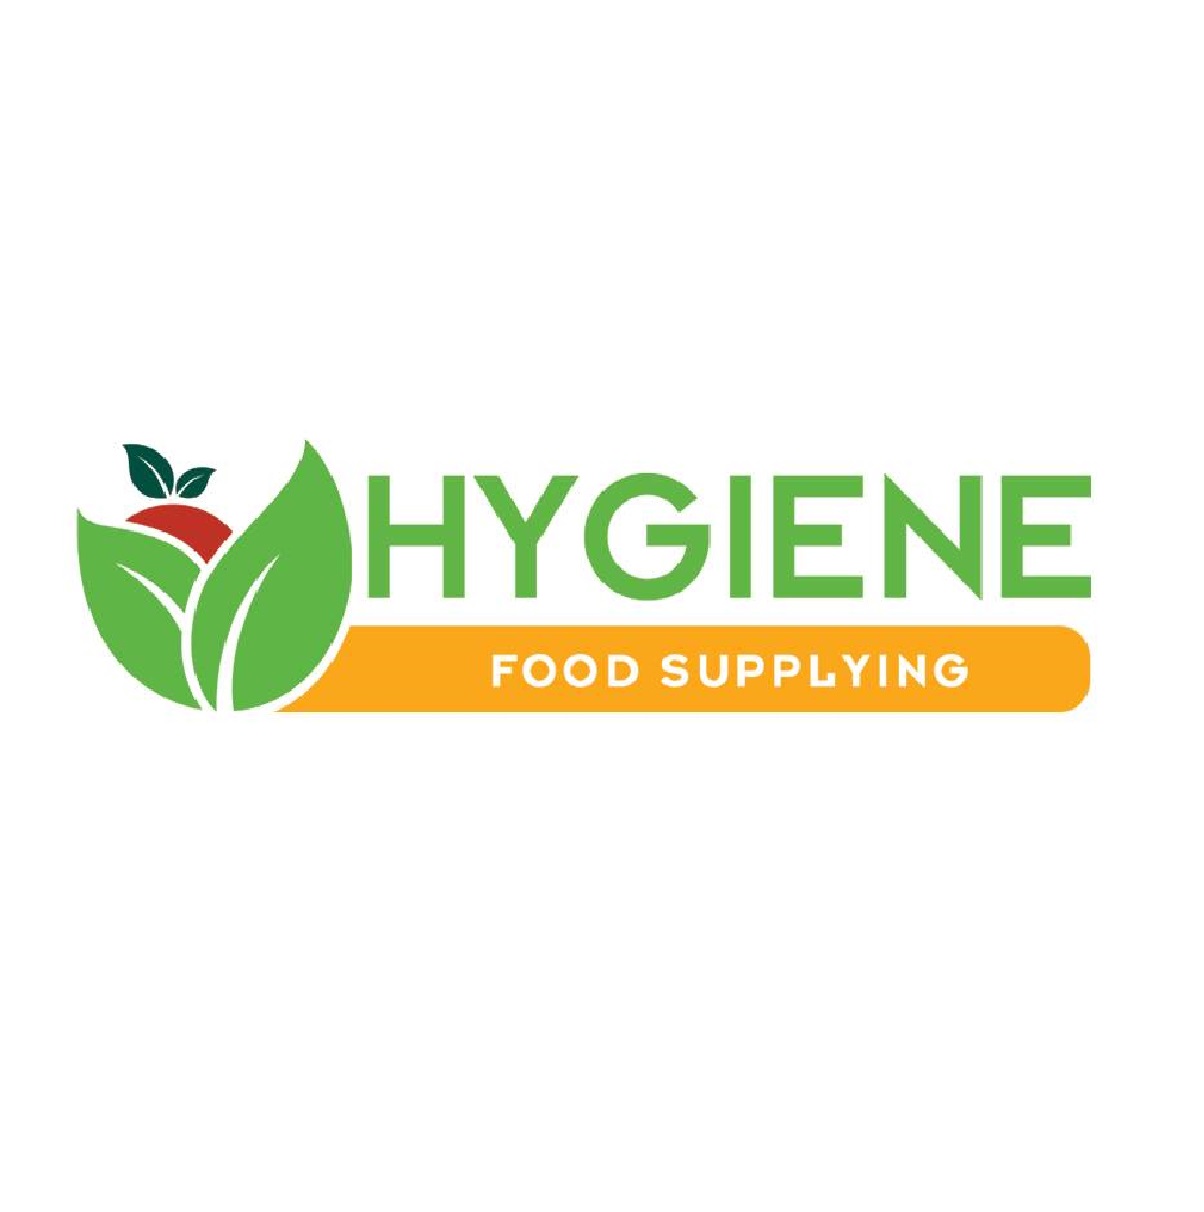 Hygiene Food Supplying